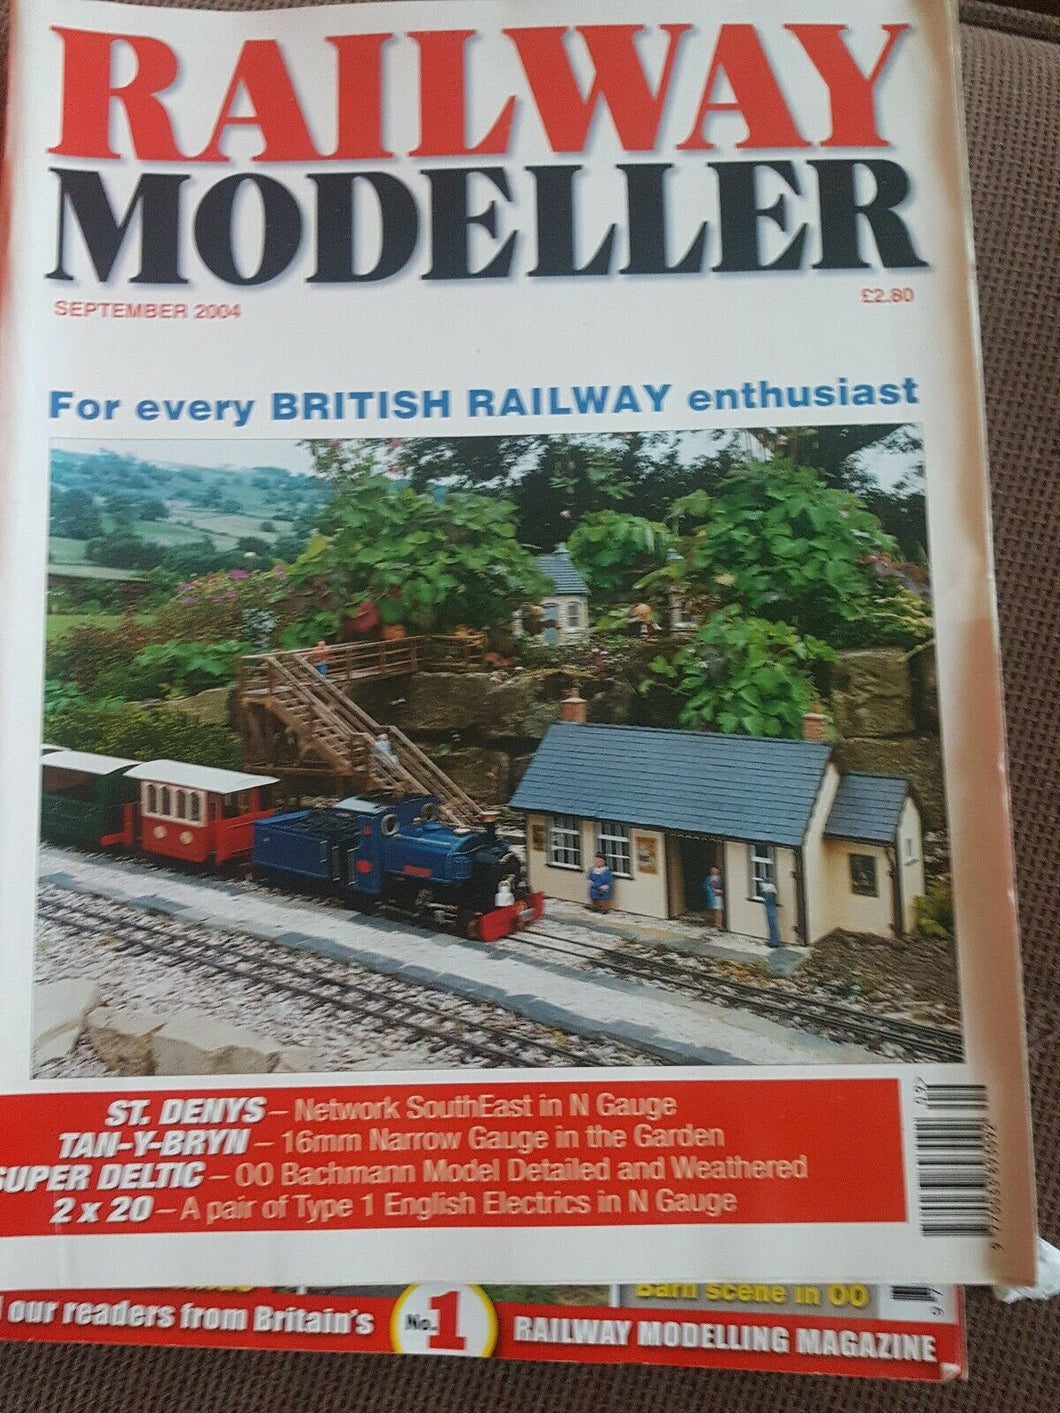 Railway modeller magazine September 2004